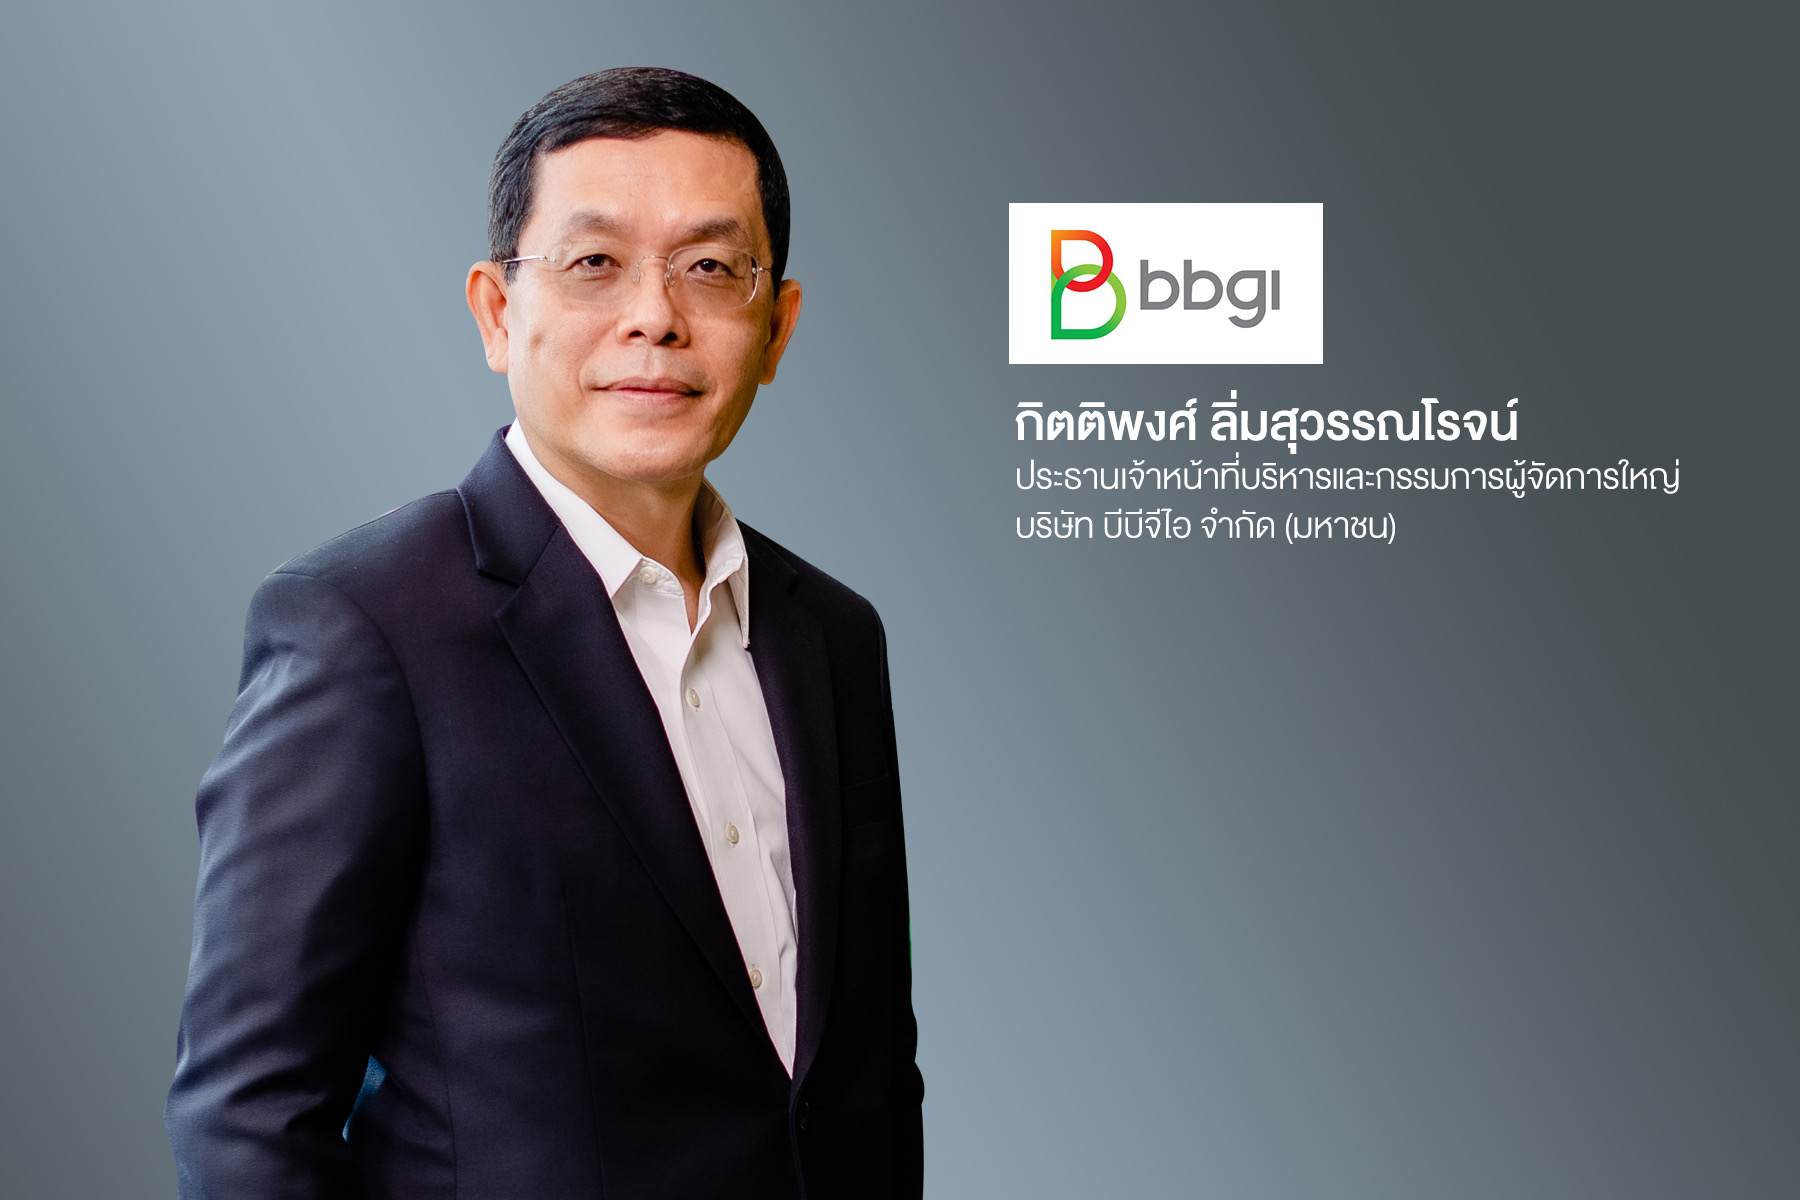 บมจ.บีบีจีไอ’ ผู้นำอุตสาหกรรมพลังงานเชื้อเพลิงชีวภาพ ผู้บุกเบิกธุรกิจผลิตภัณฑ์ชีวภาพมูลค่าสูงที่ส่งเสริมสุขภาพในประเทศไทย ยื่นไฟลิ่งเข้าจดทะเบียนใน SET